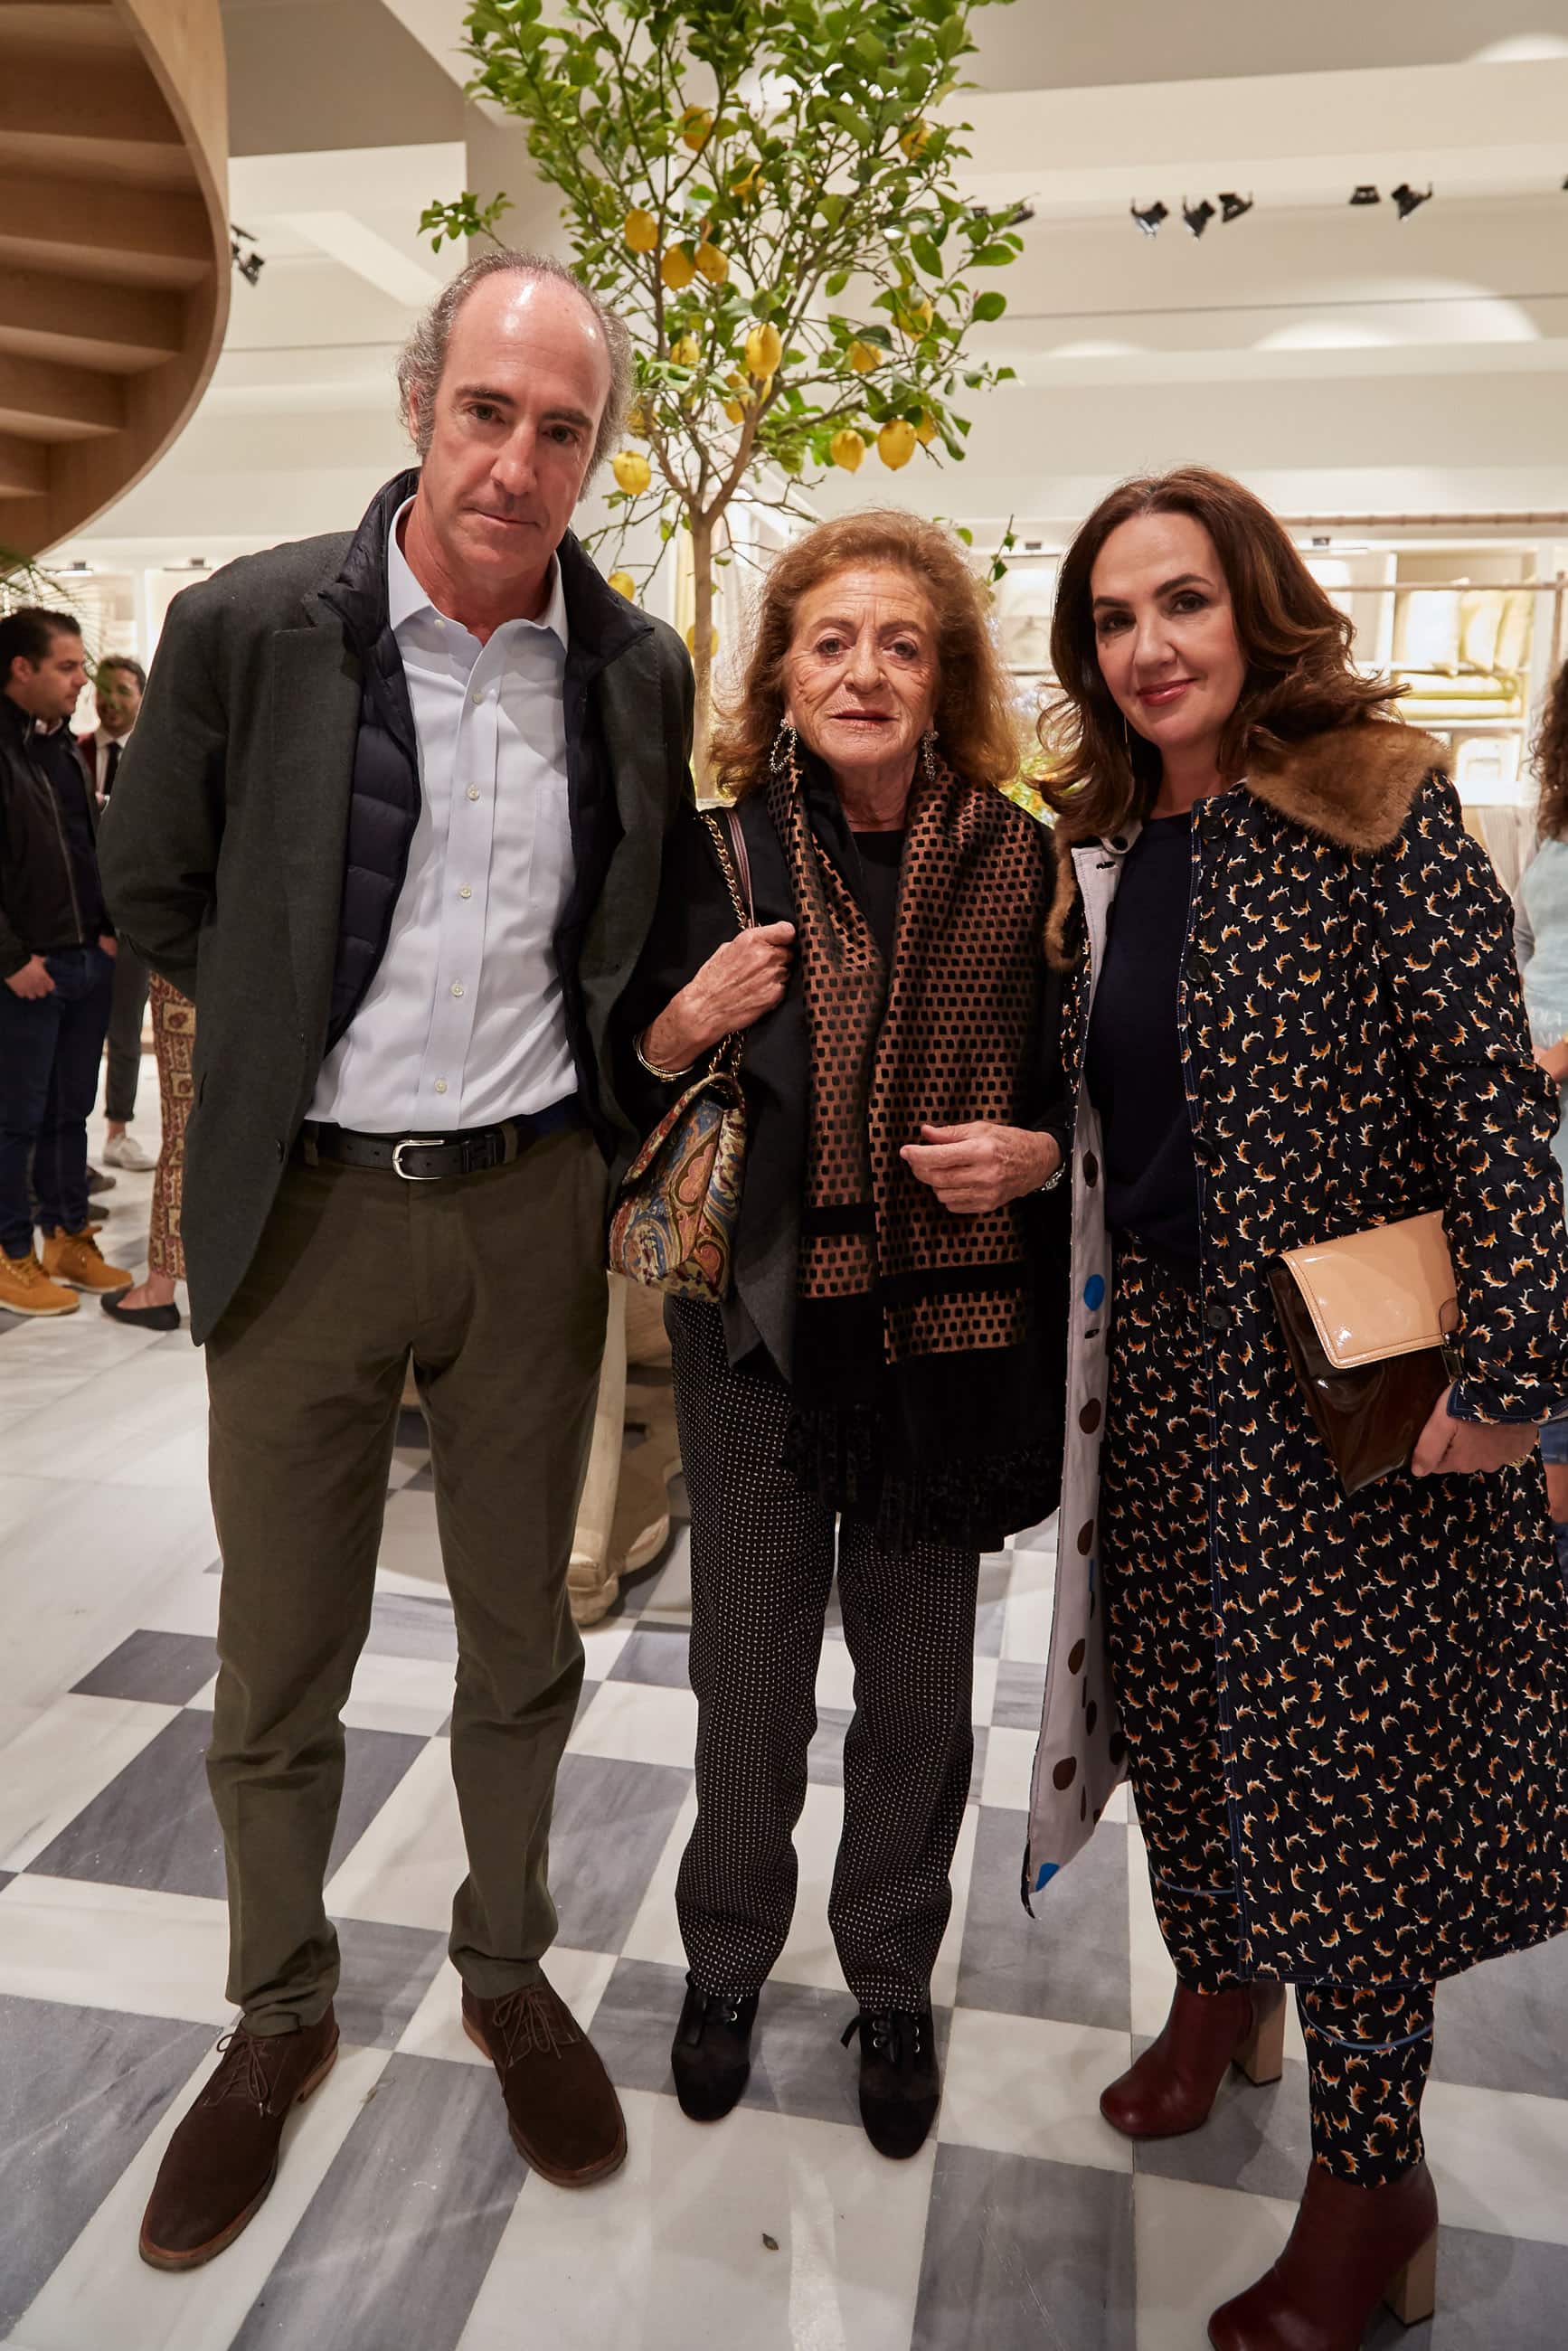 Inauguración, Producción local y Relaciones Públicas para la apertura Zara Home en Palma, Mallorca, por Isabel Lopez Quesada con Wozere